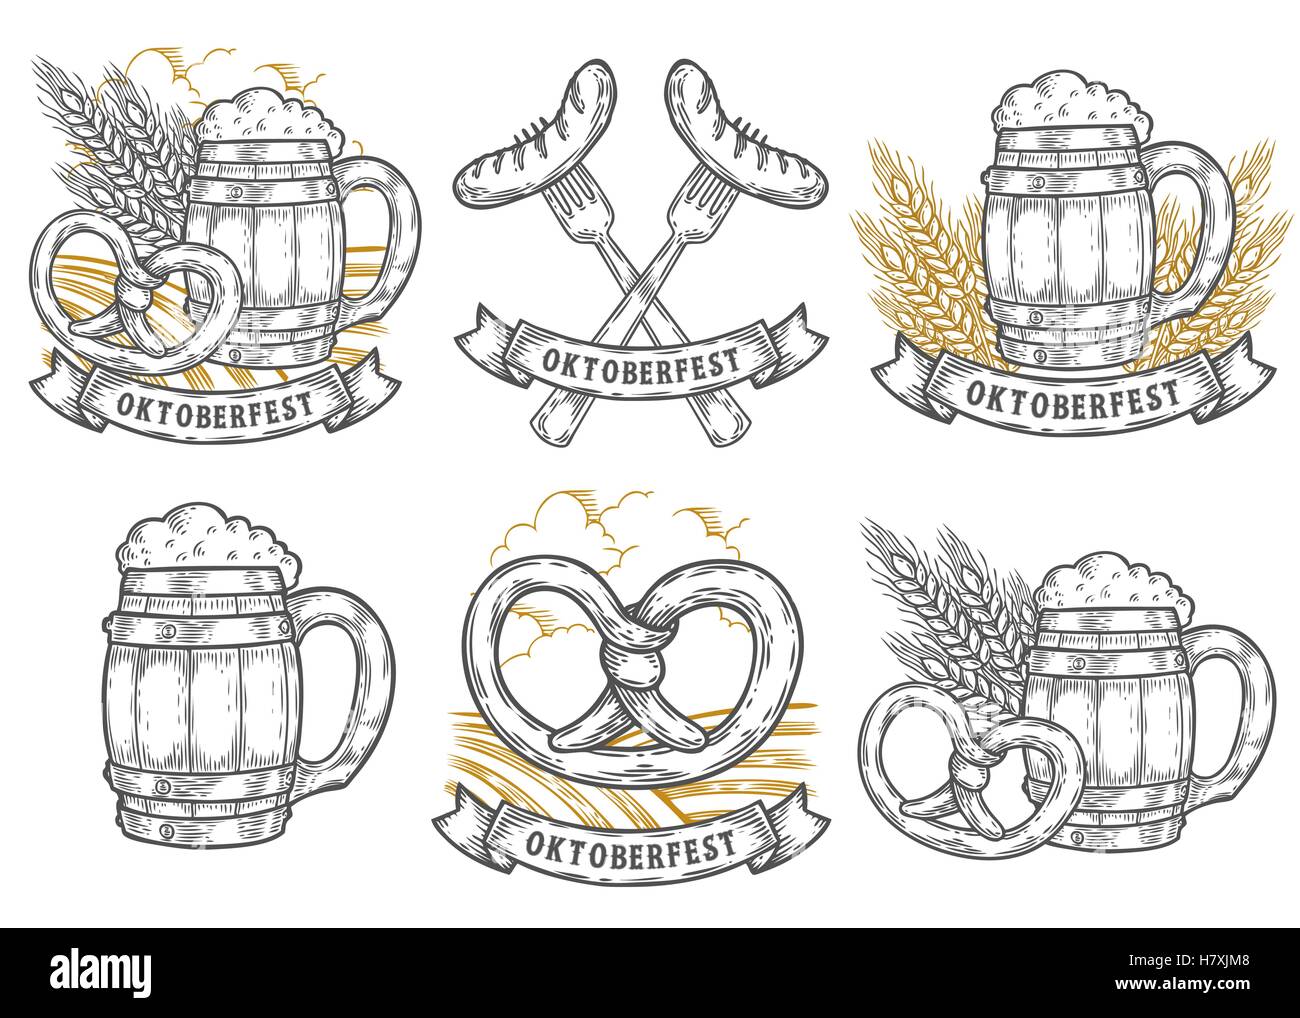 Wooden craft beer mug, wheat, sausage, pretzel. Oktoberfest labels set. Black vintage engraved hand drawn vector sketch illustra Stock Vector